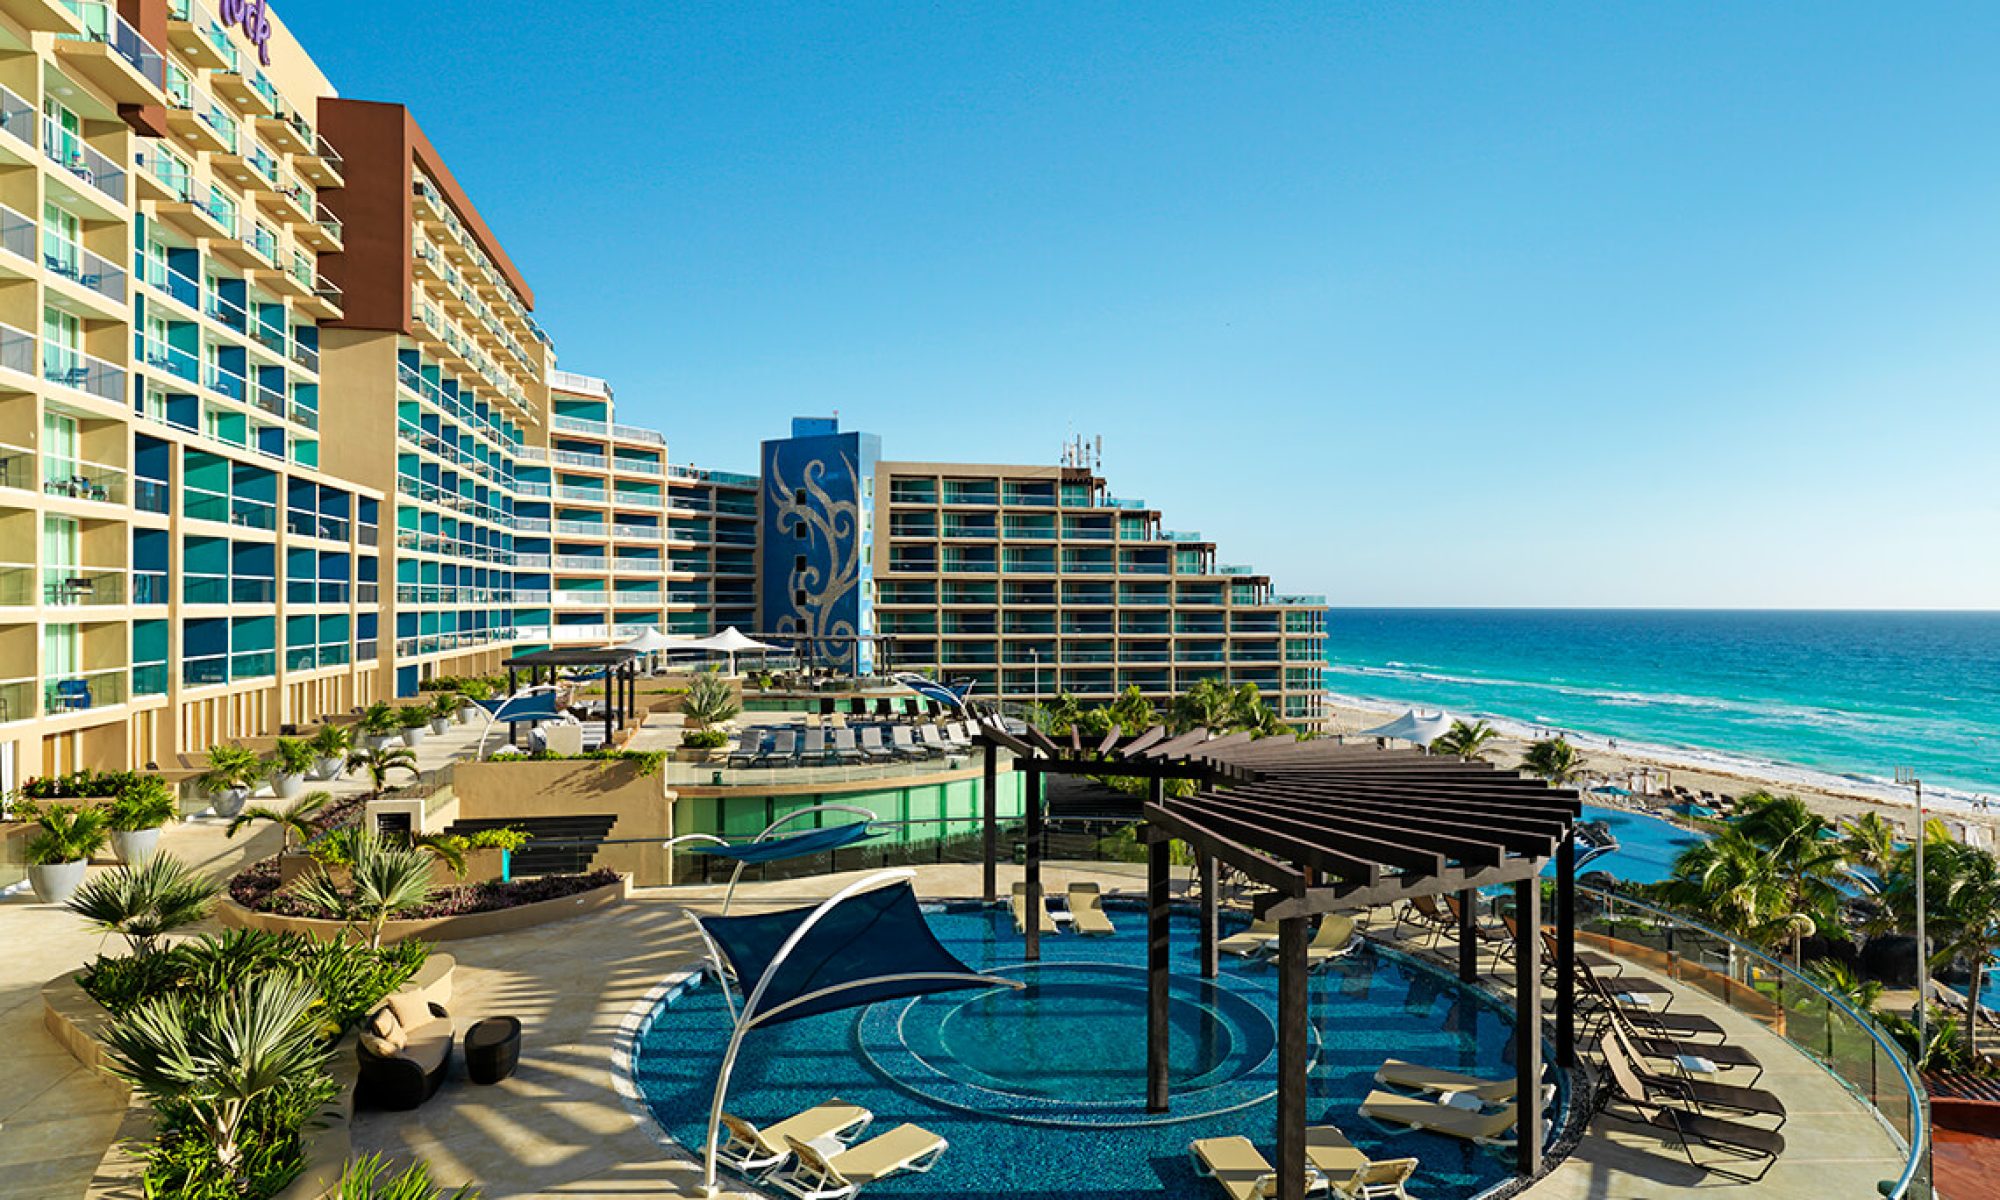 Hard-Rock-Hotel-Cancun.jpg